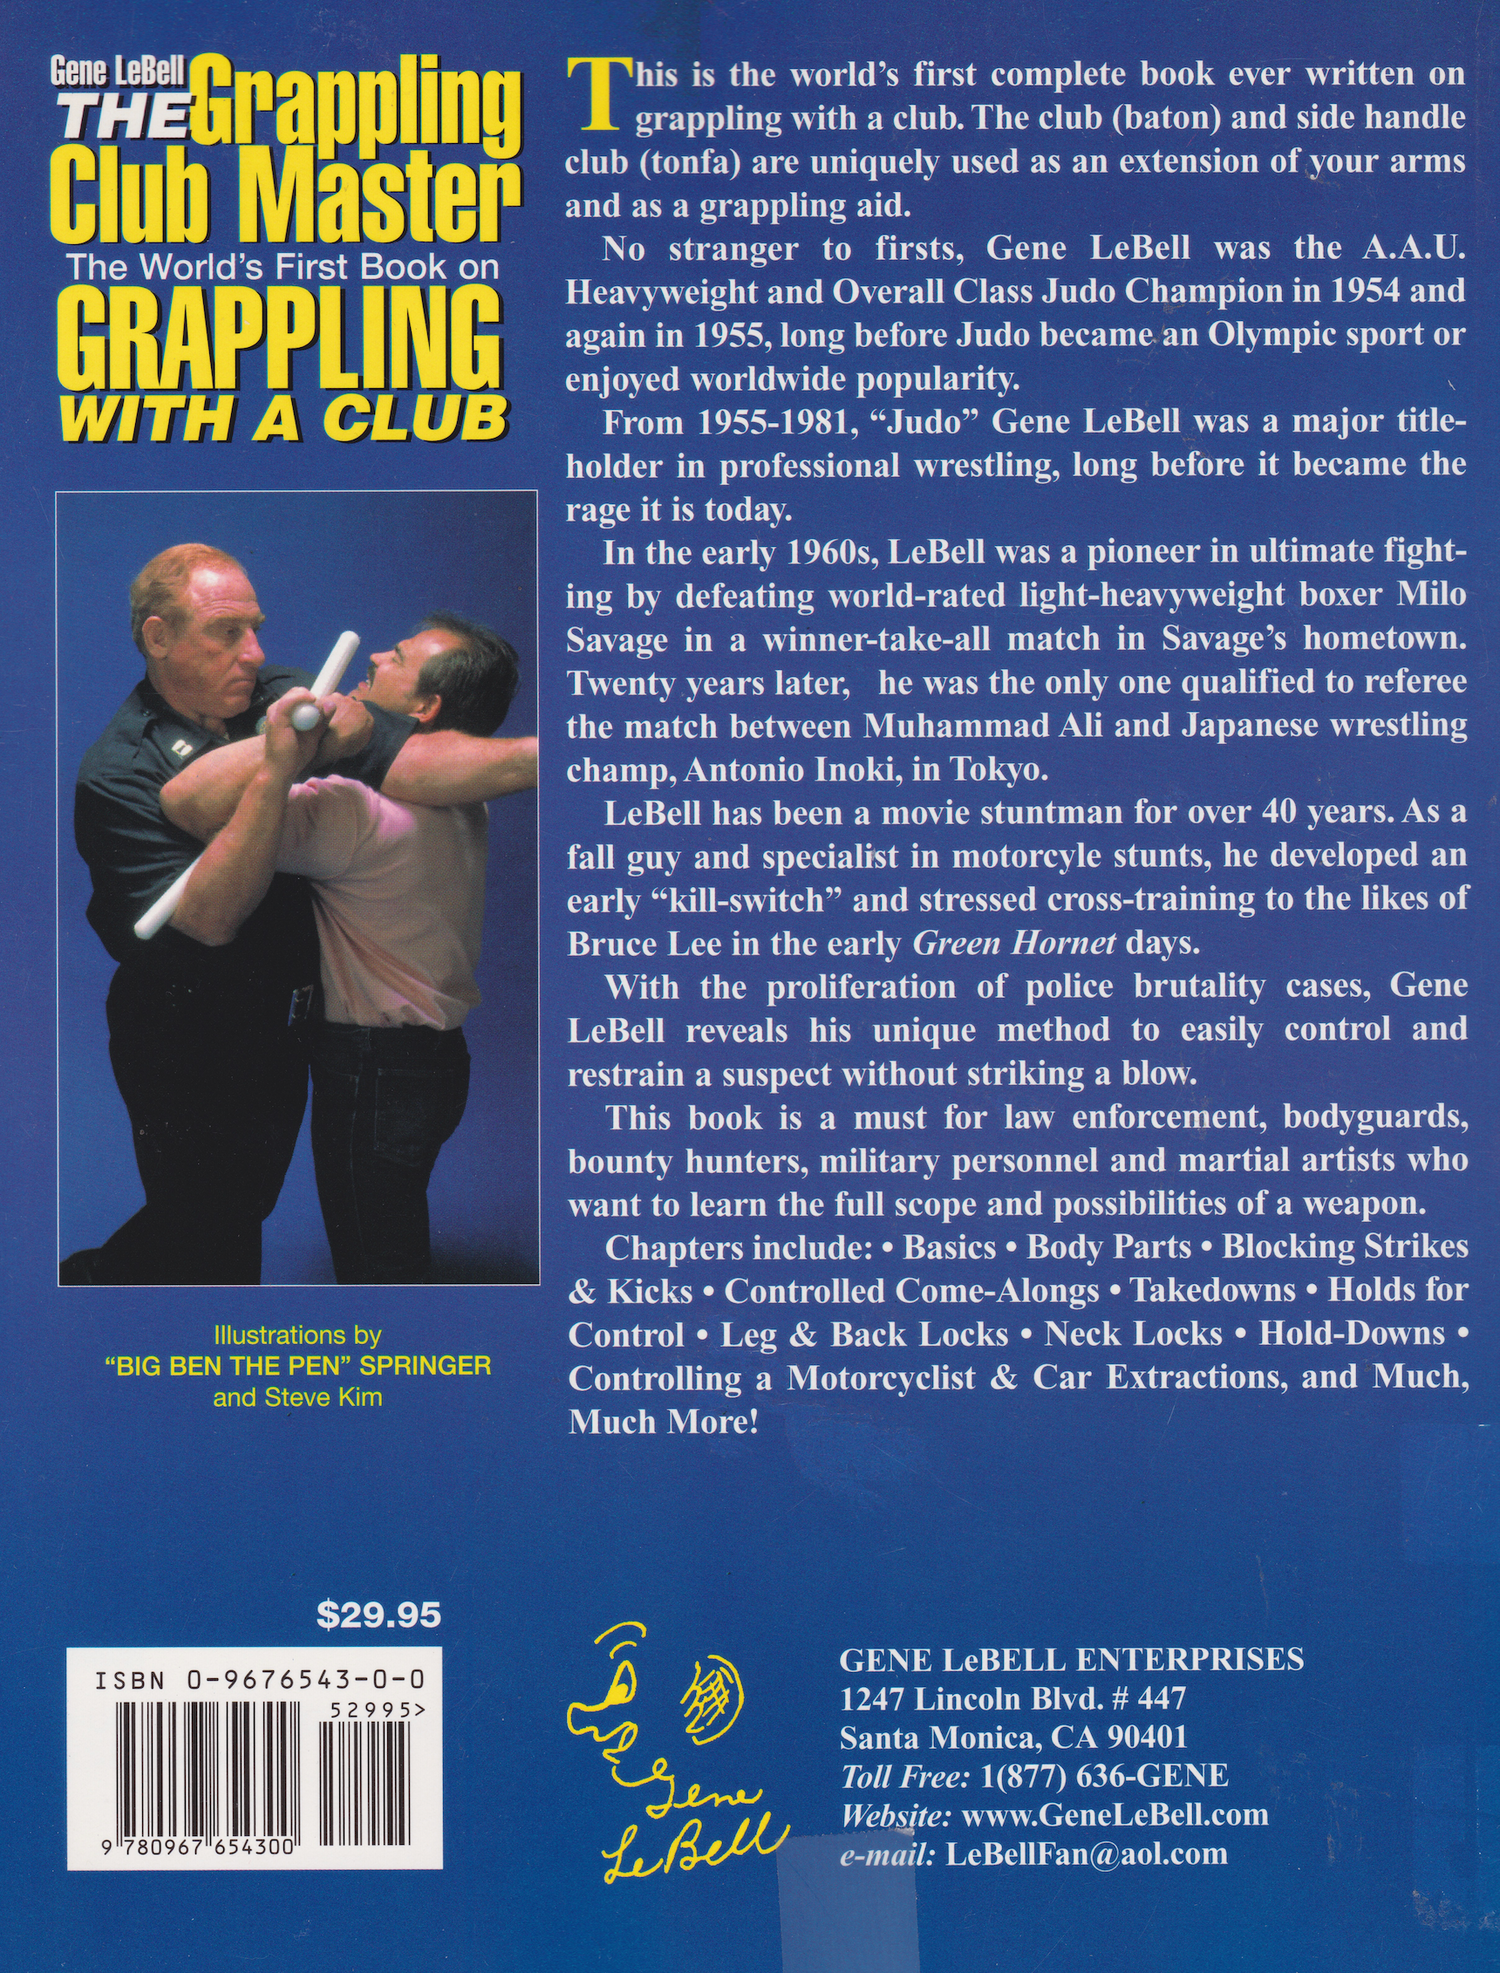 El libro maestro del club de lucha de Gene LeBell (usado) 